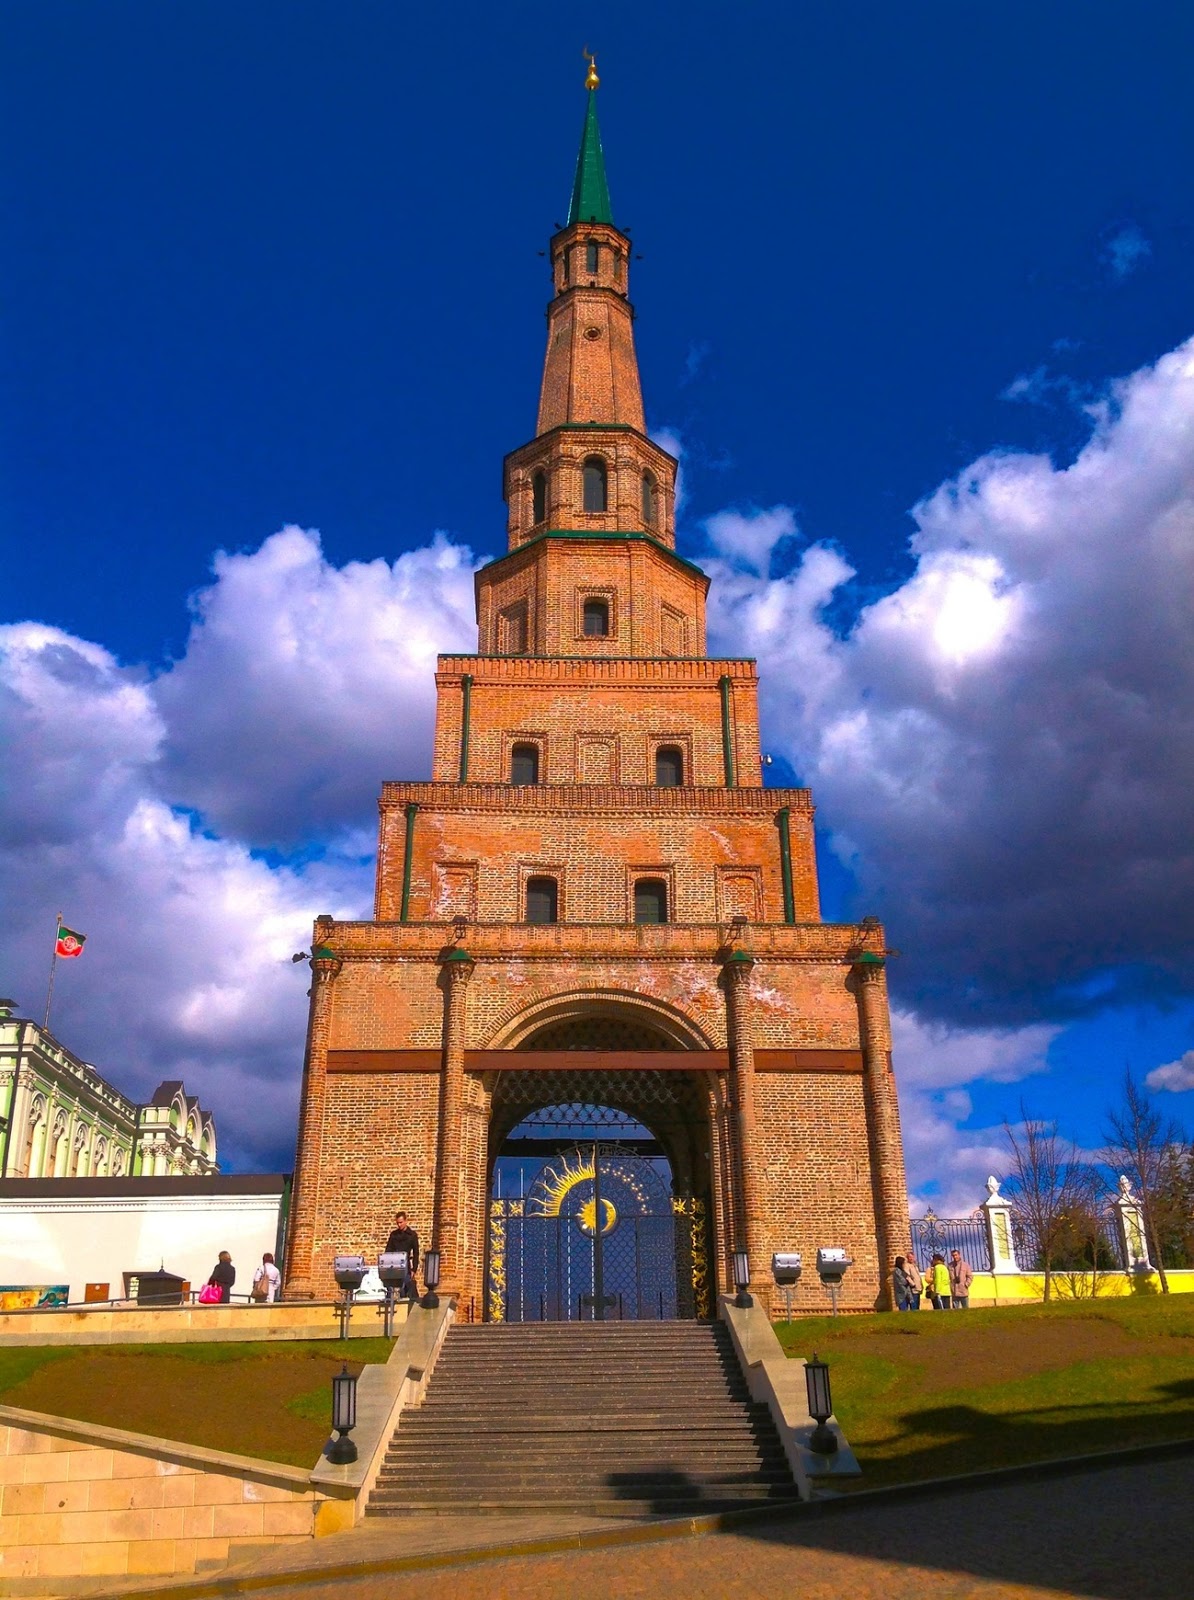 Башня рены. Башня Сююмбике Казанский Кремль. Башня сюмбюкеив кпзани. Башня Сююм Беке в Казани. Башня сиюм Беке Казанского Кремля.